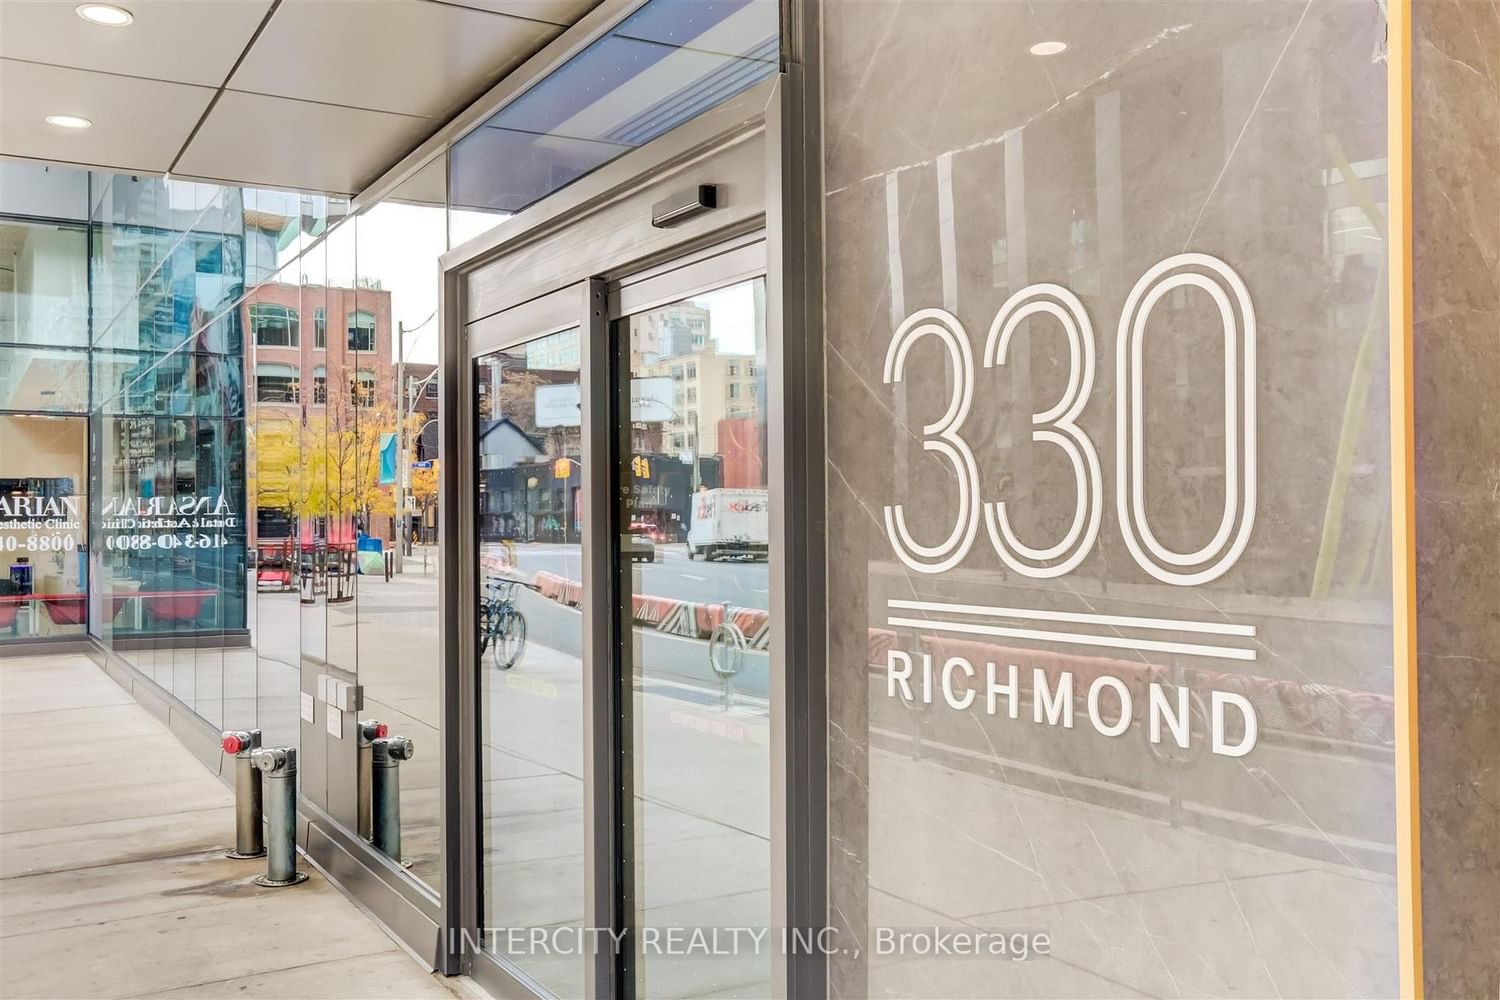 330 Richmond St, unit 1603 for sale - image #3